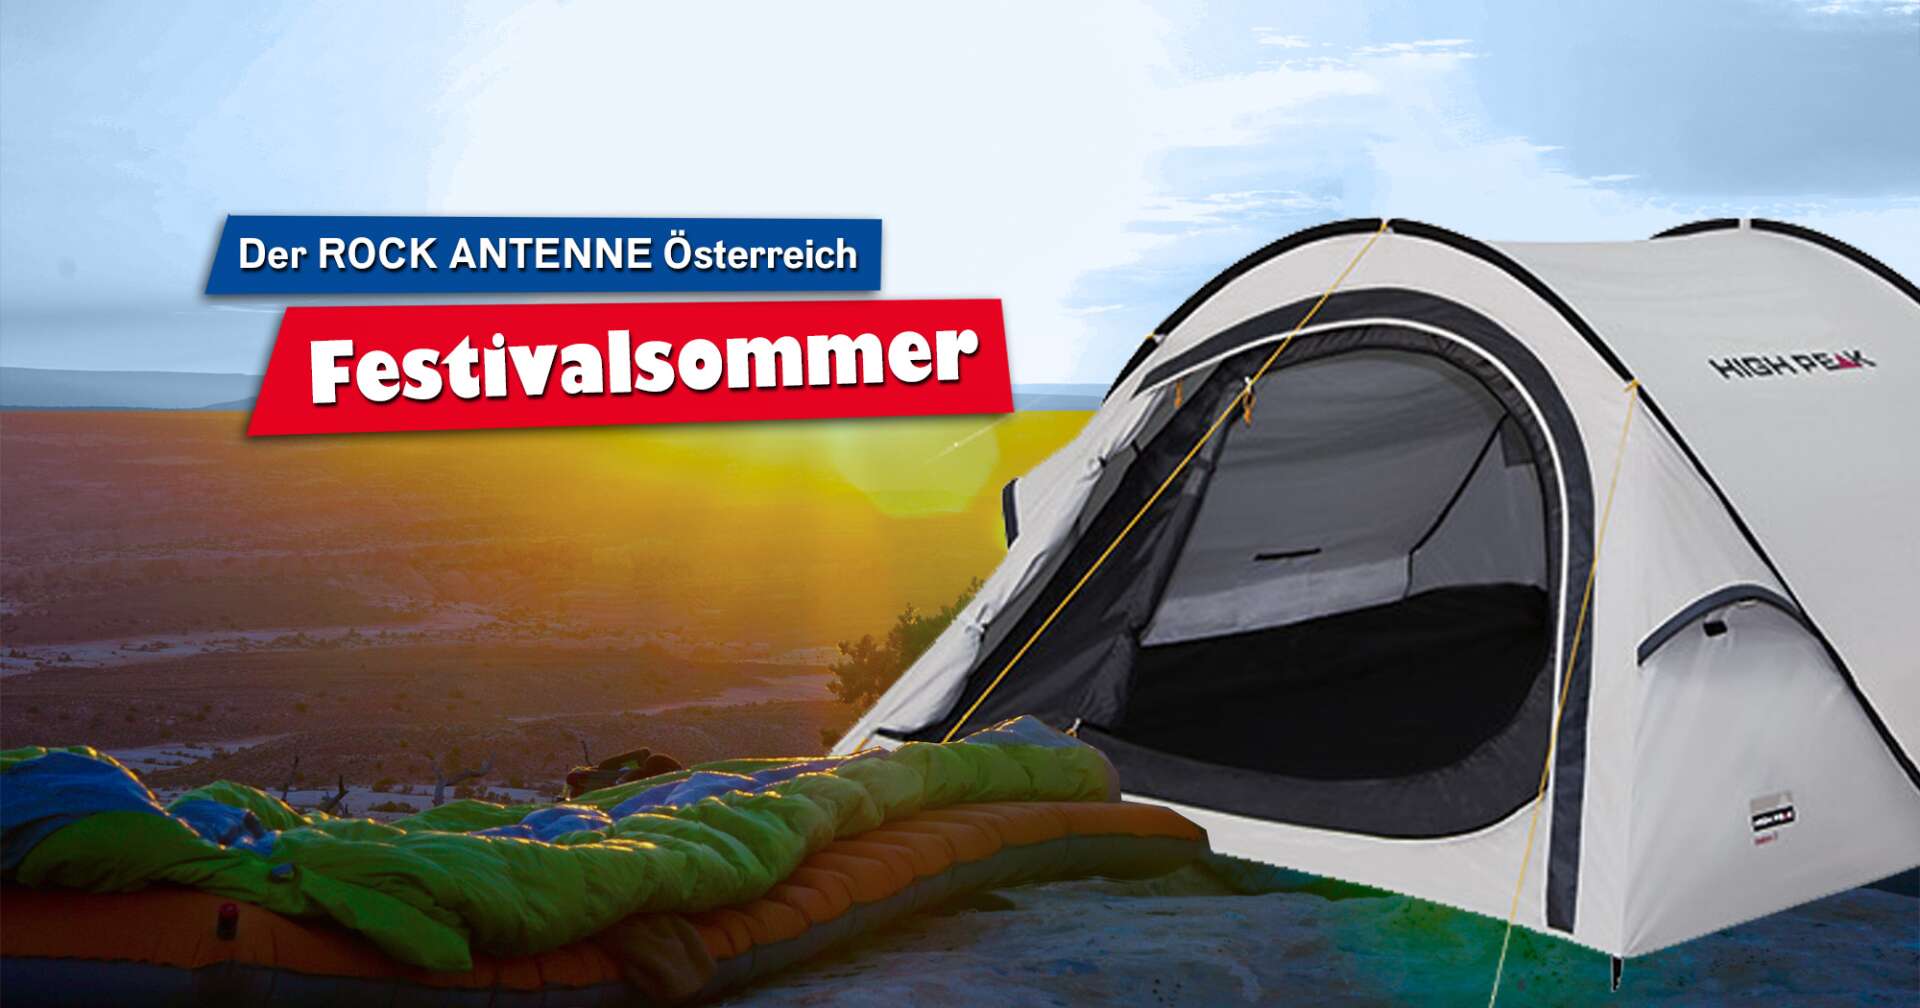 Ein Bild eines Zelts von High Peak vor einem Sonnenuntergang mit der Aufschrift "Der ROCK ANTENNE Österreich Festivalsommer"